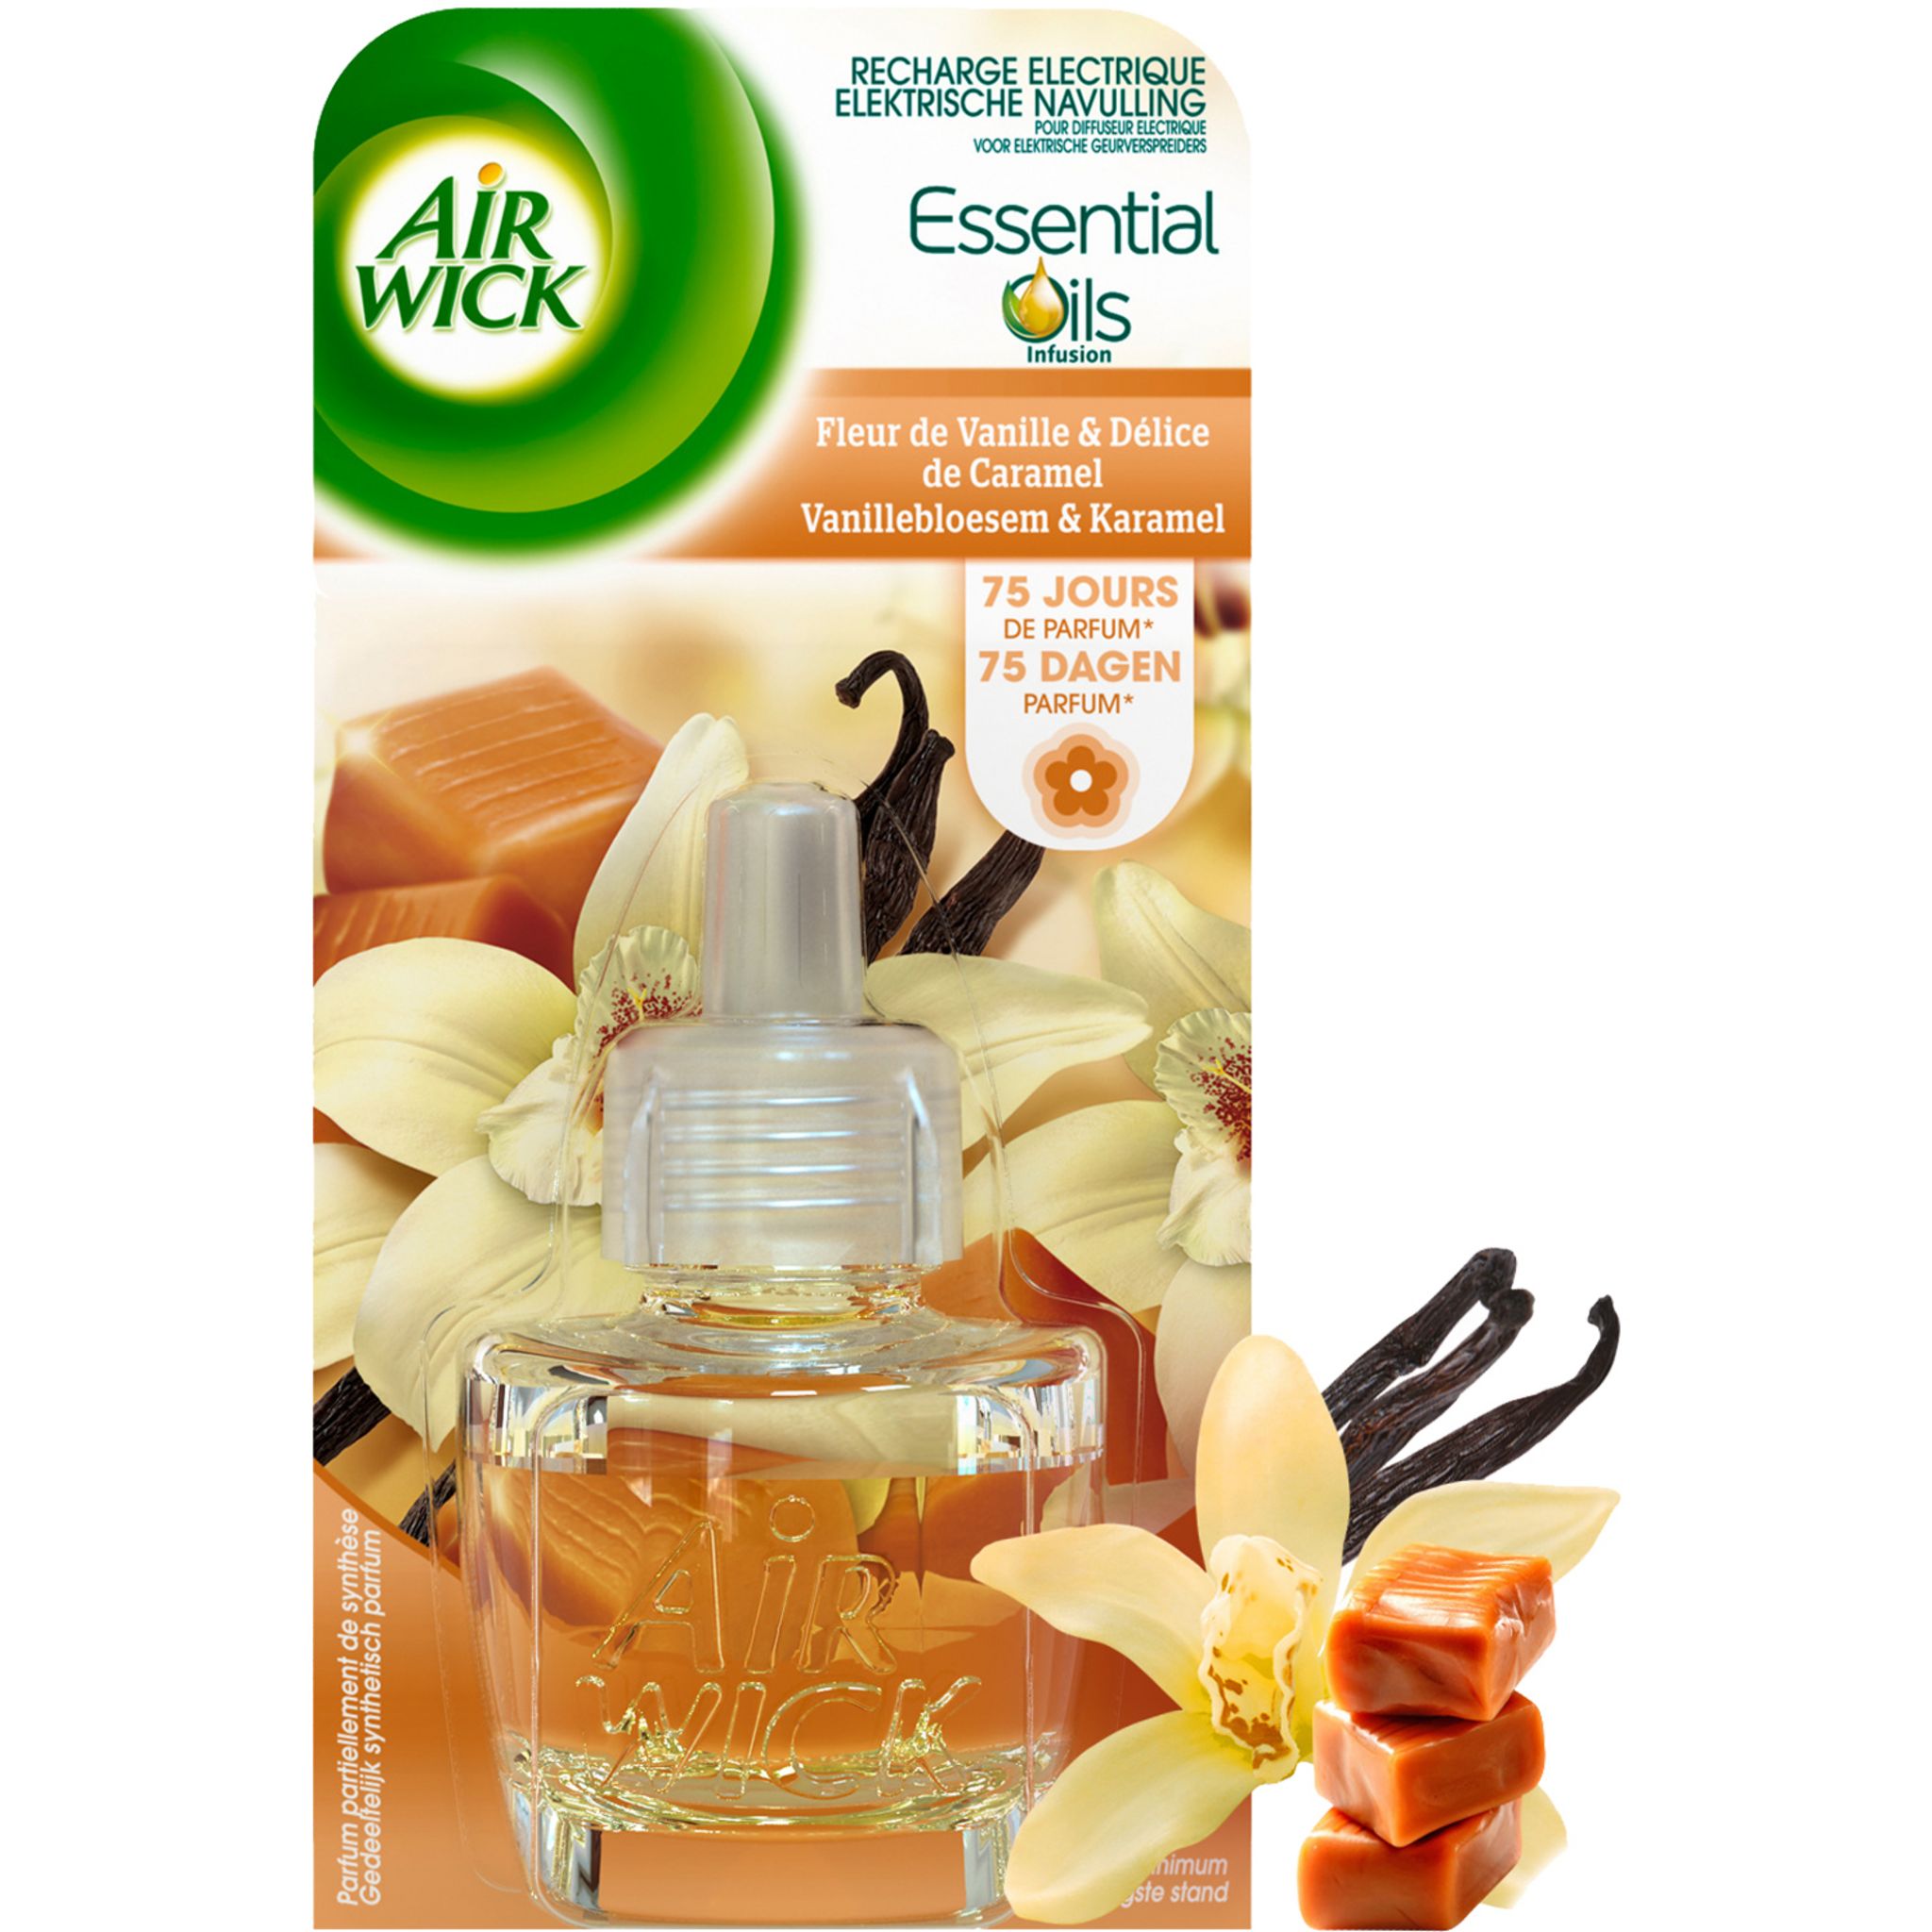 AIR WICK Essential Oils recharge pour diffuseur electrique vanille caramel  19ml pas cher 